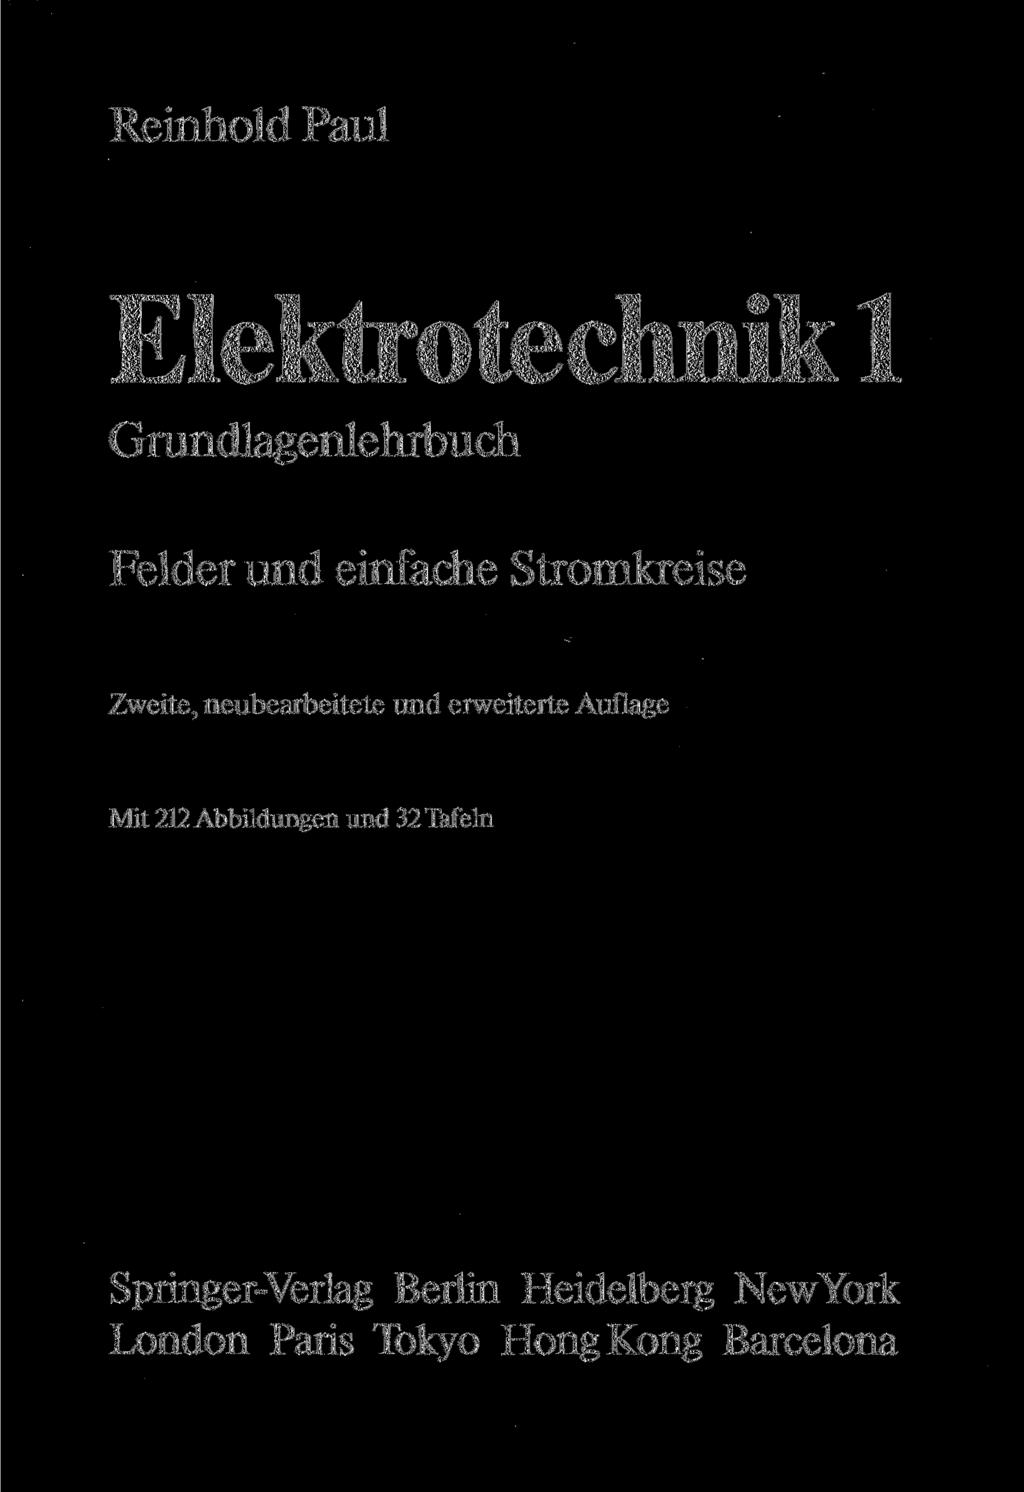 Reinhold Paul Elektrotechnik 1 Grundlagenlehrbuch Felder und einfache Stromkreise Zweite, neubearbeitete und erweiterte